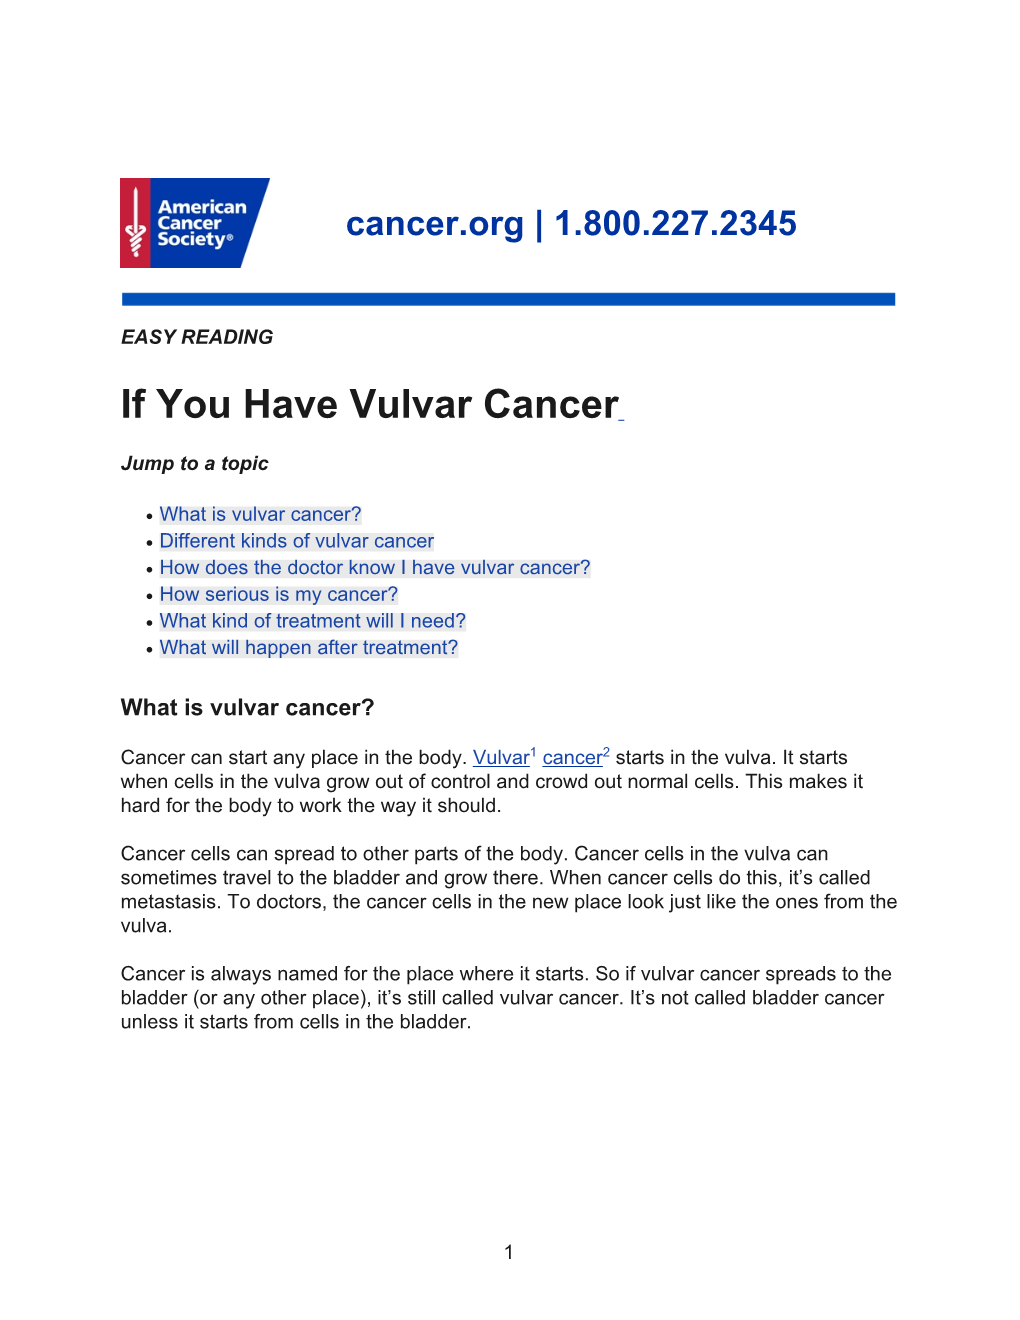 If You Have Vulvar Cancer